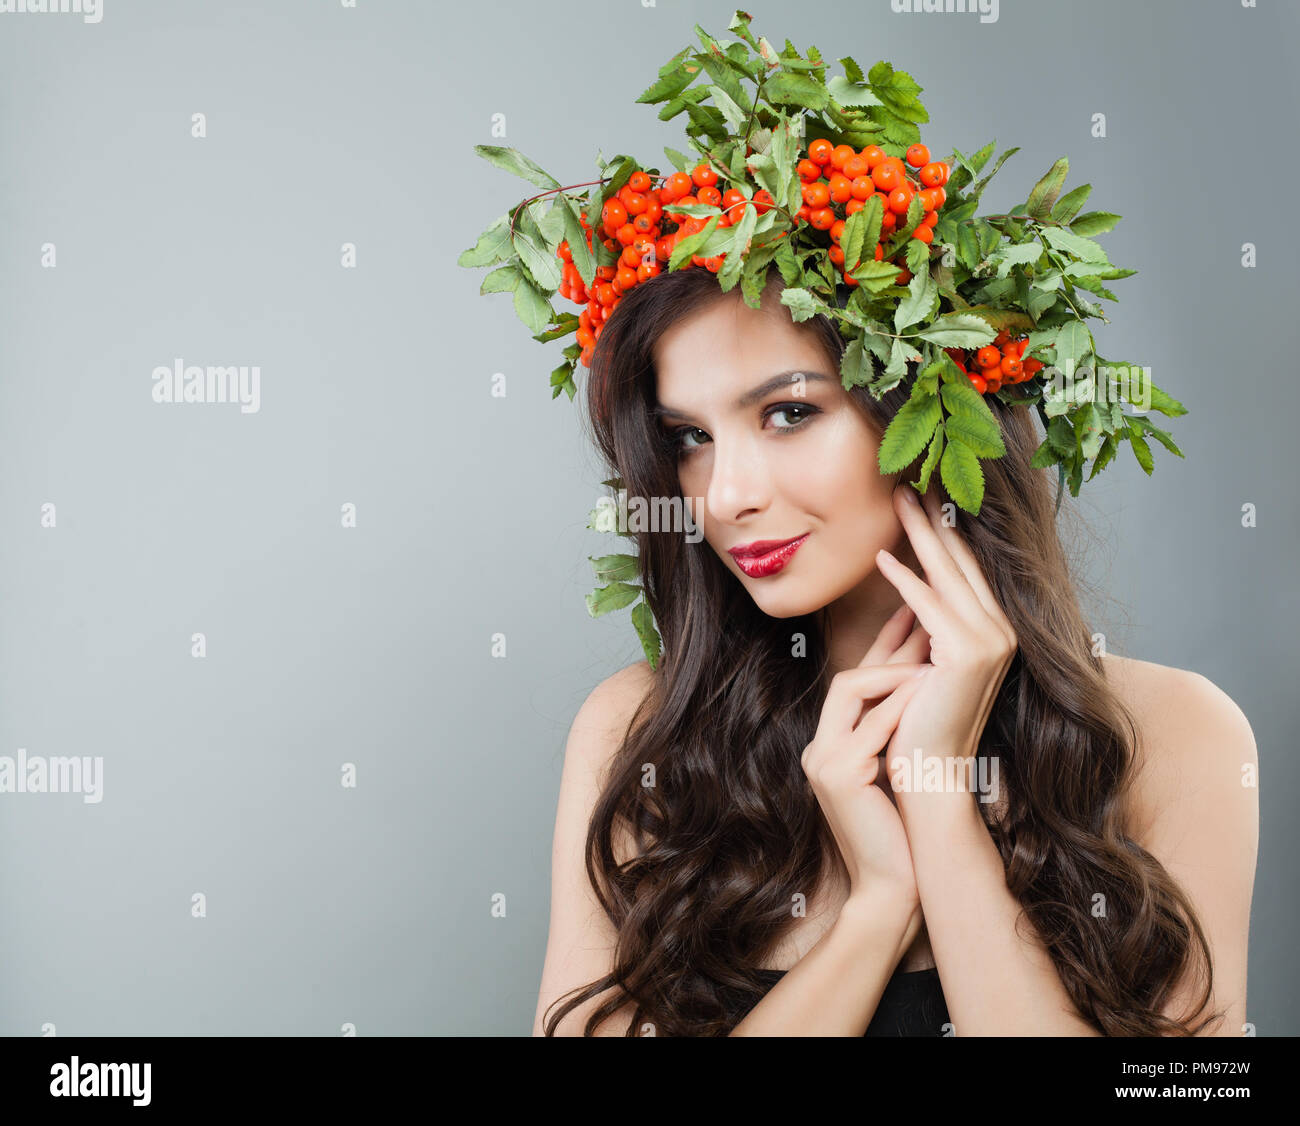 Attraktive Frau Mode Modell mit gesunden lockige Haare, Make-up und roten Beeren und grüne Blätter Kranz Stockfoto